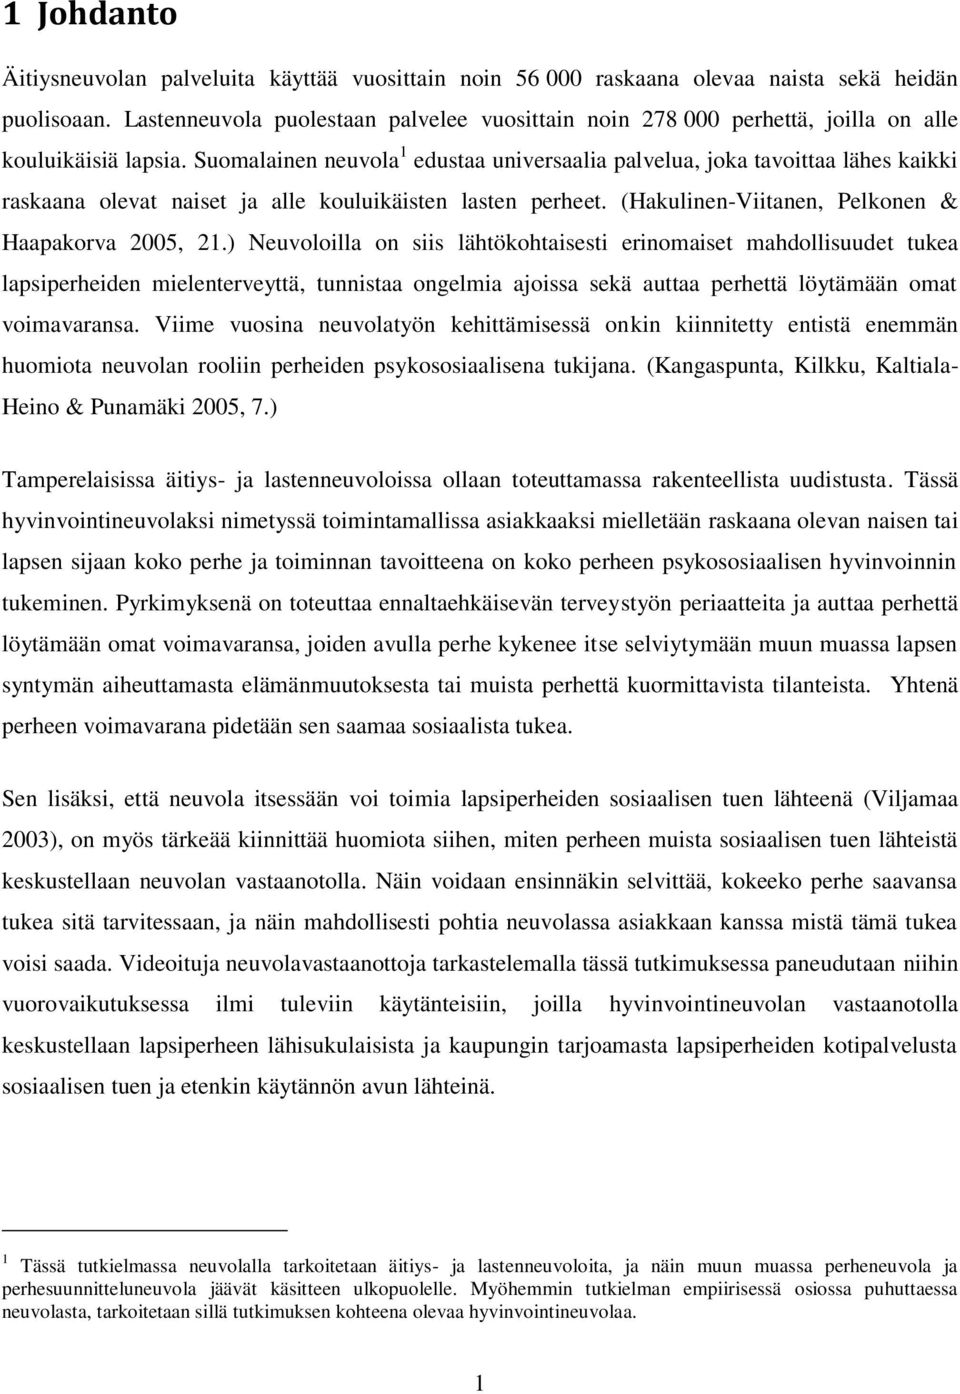 Suomalainen neuvola 1 edustaa universaalia palvelua, joka tavoittaa lähes kaikki raskaana olevat naiset ja alle kouluikäisten lasten perheet. (Hakulinen-Viitanen, Pelkonen & Haapakorva 2005, 21.